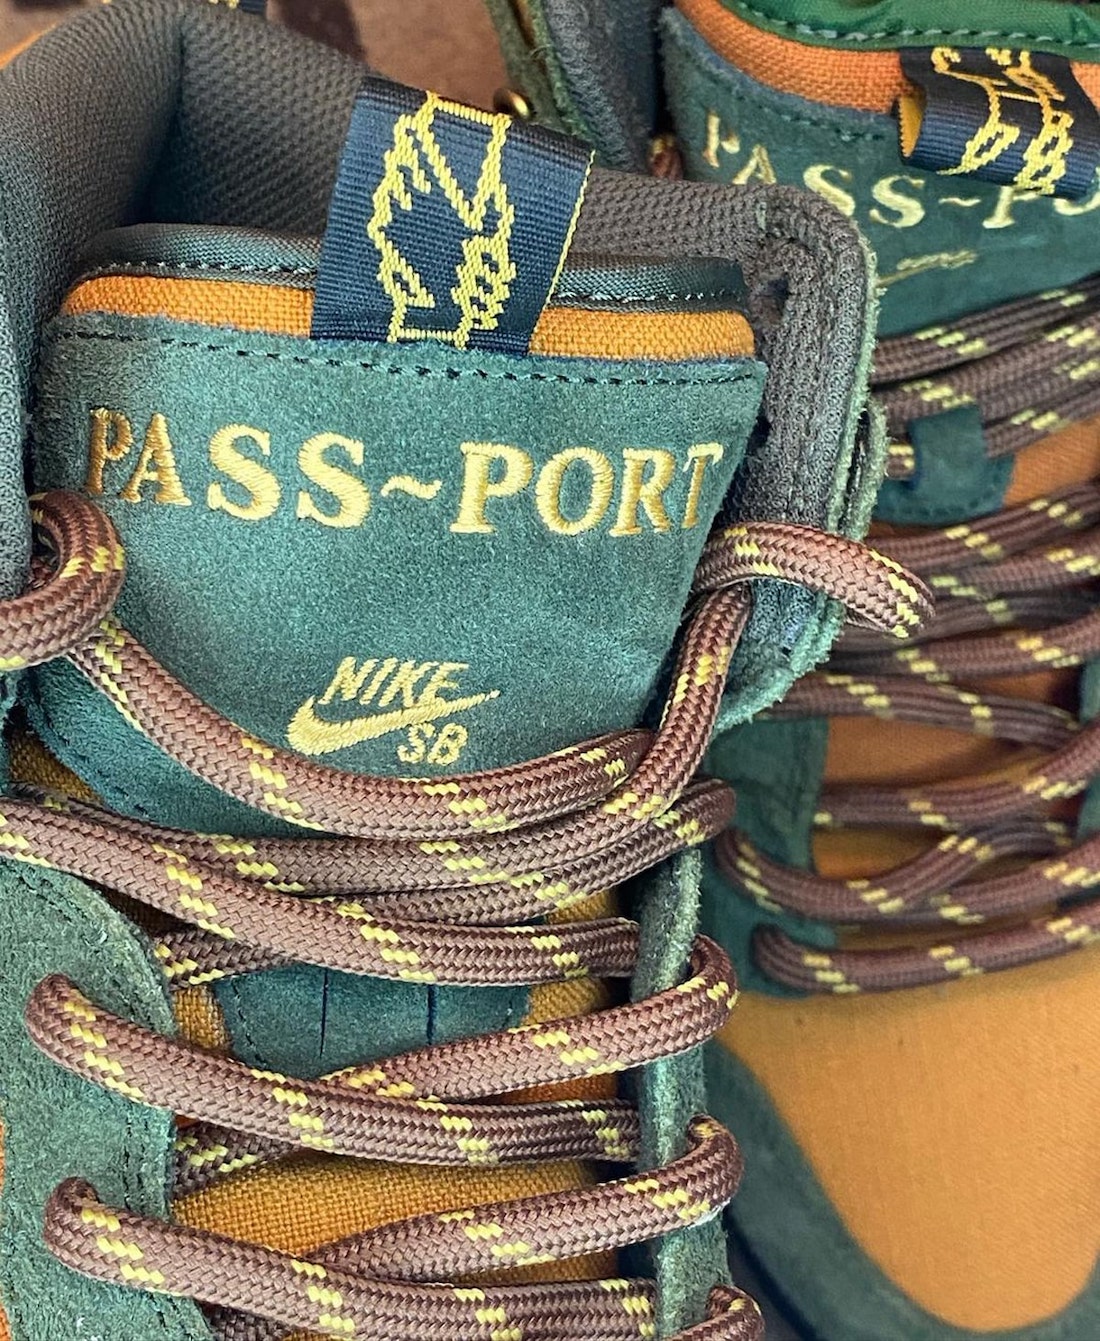 Pass~Port Nike SB Dunk High Workboot Release Date